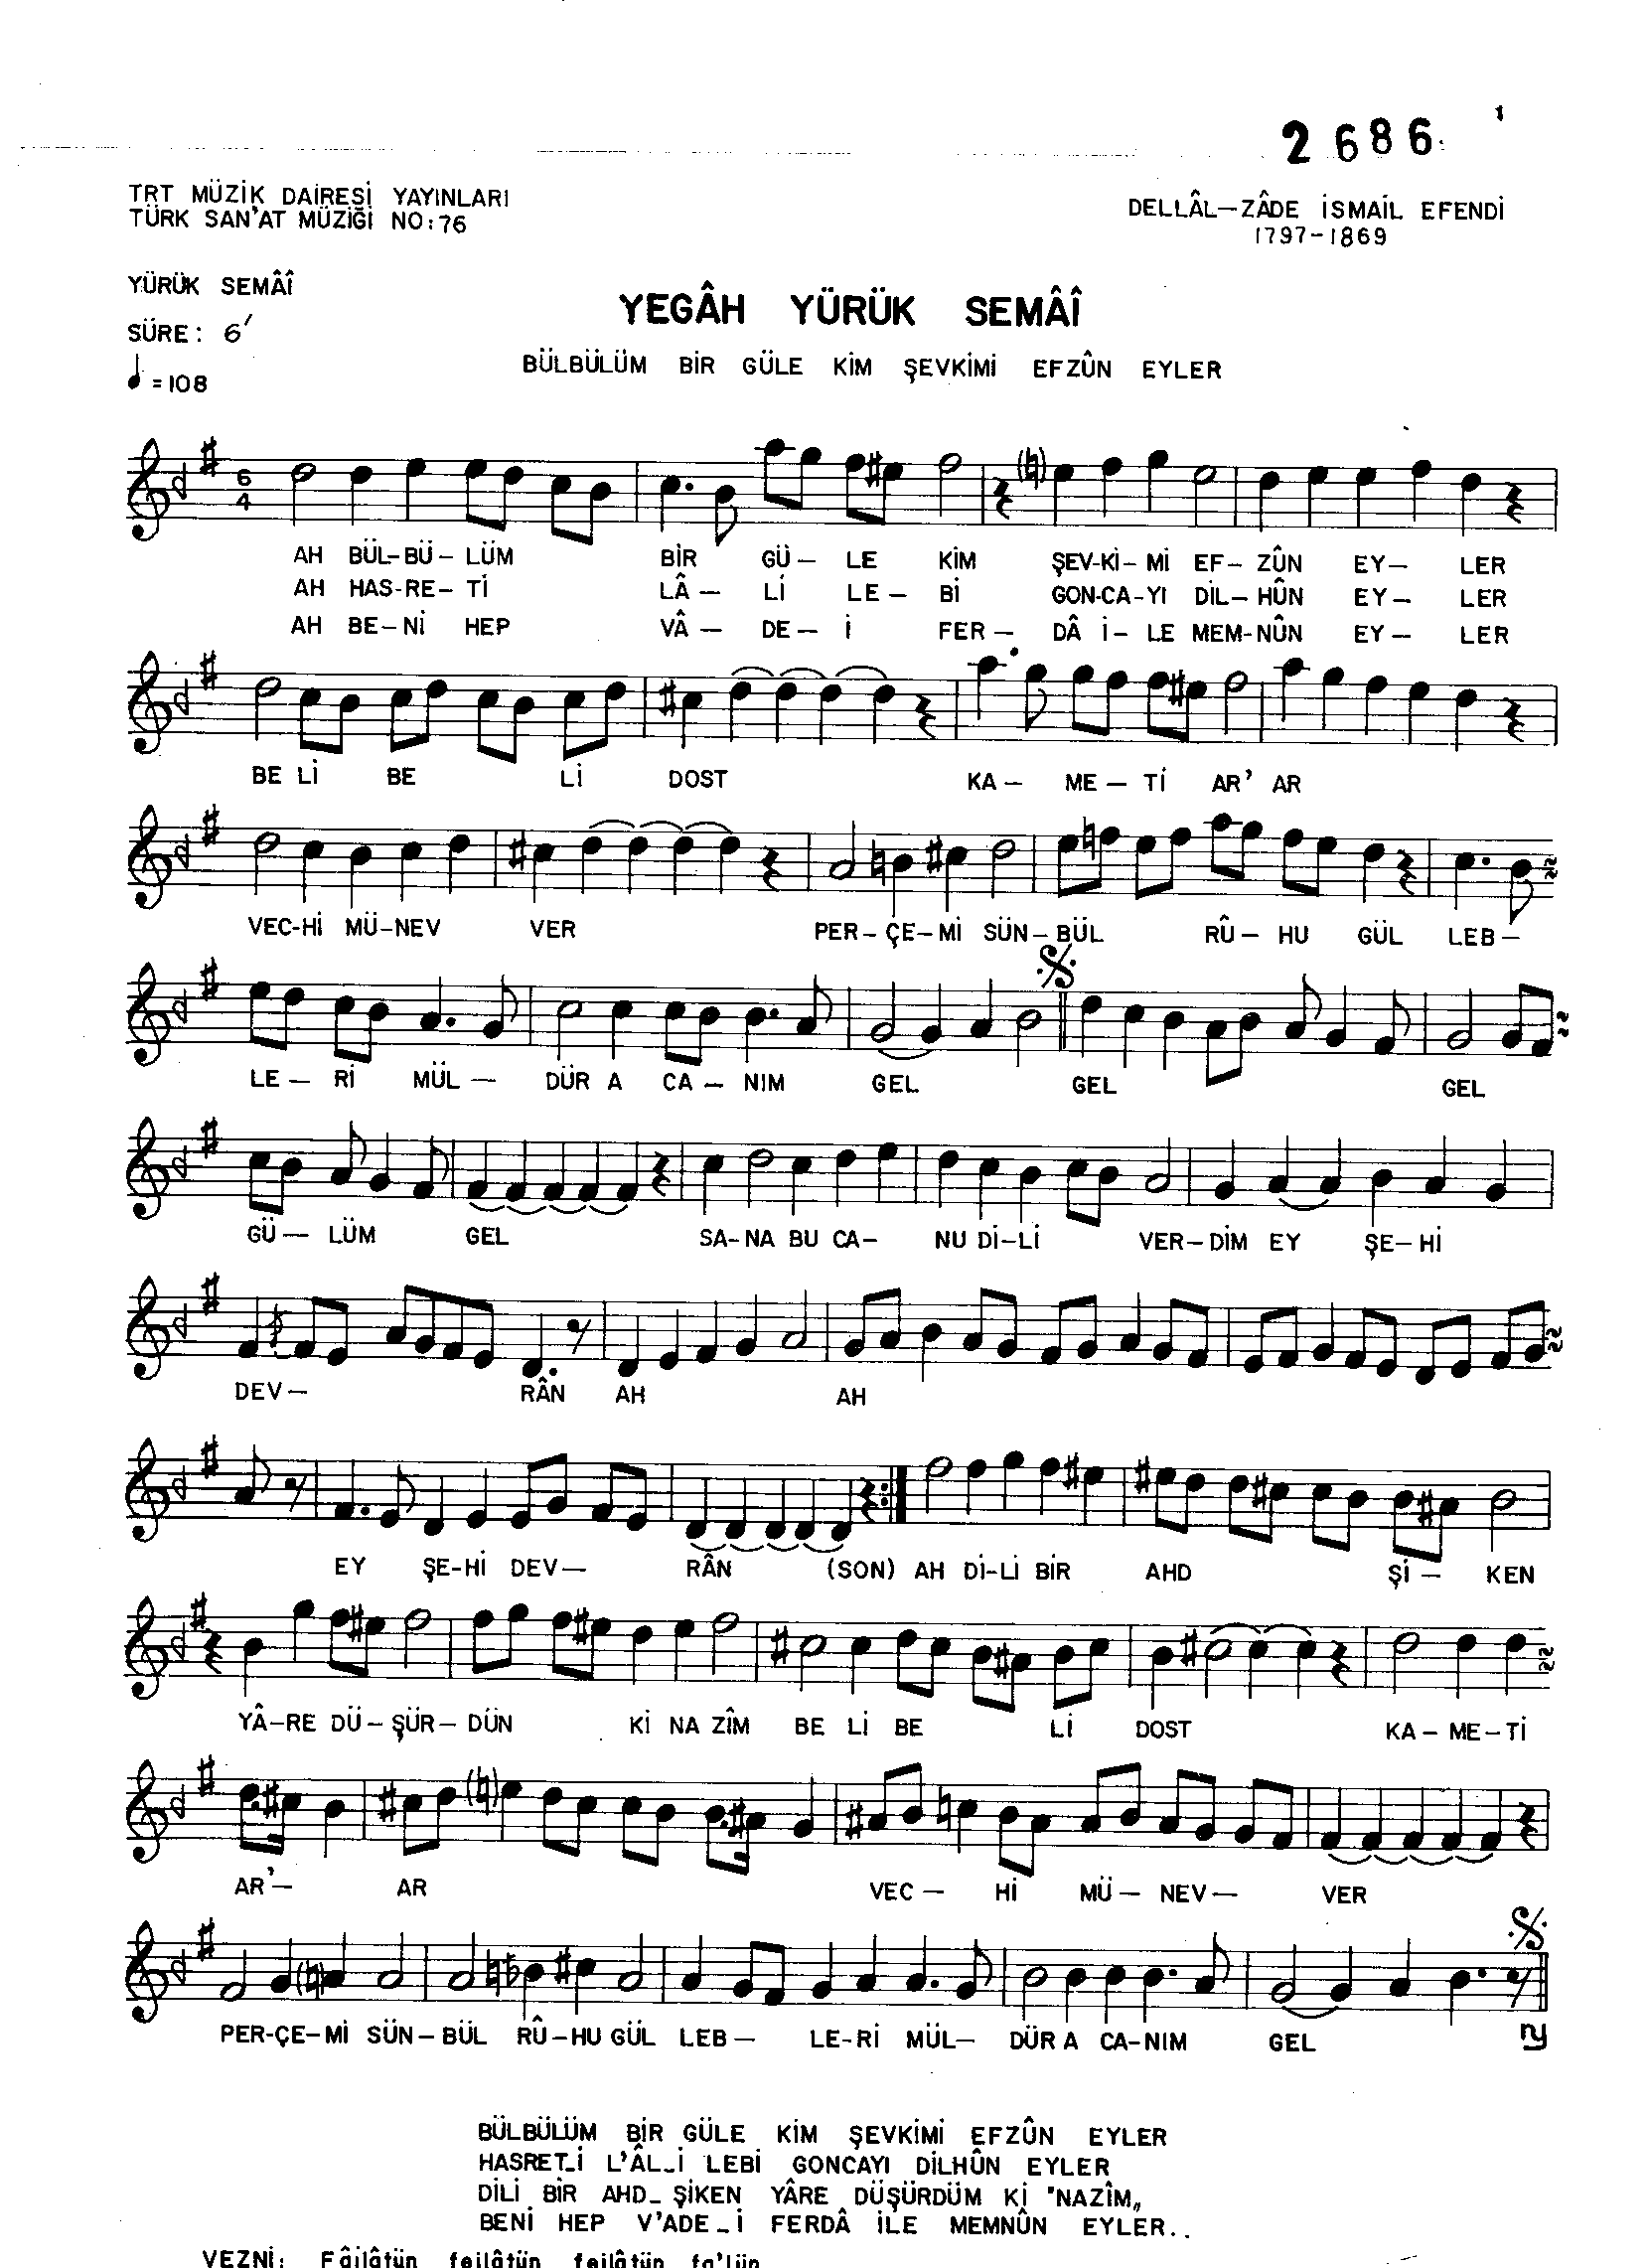 Yegah - Yürük Semai - Dellalzâde  - Sayfa 1